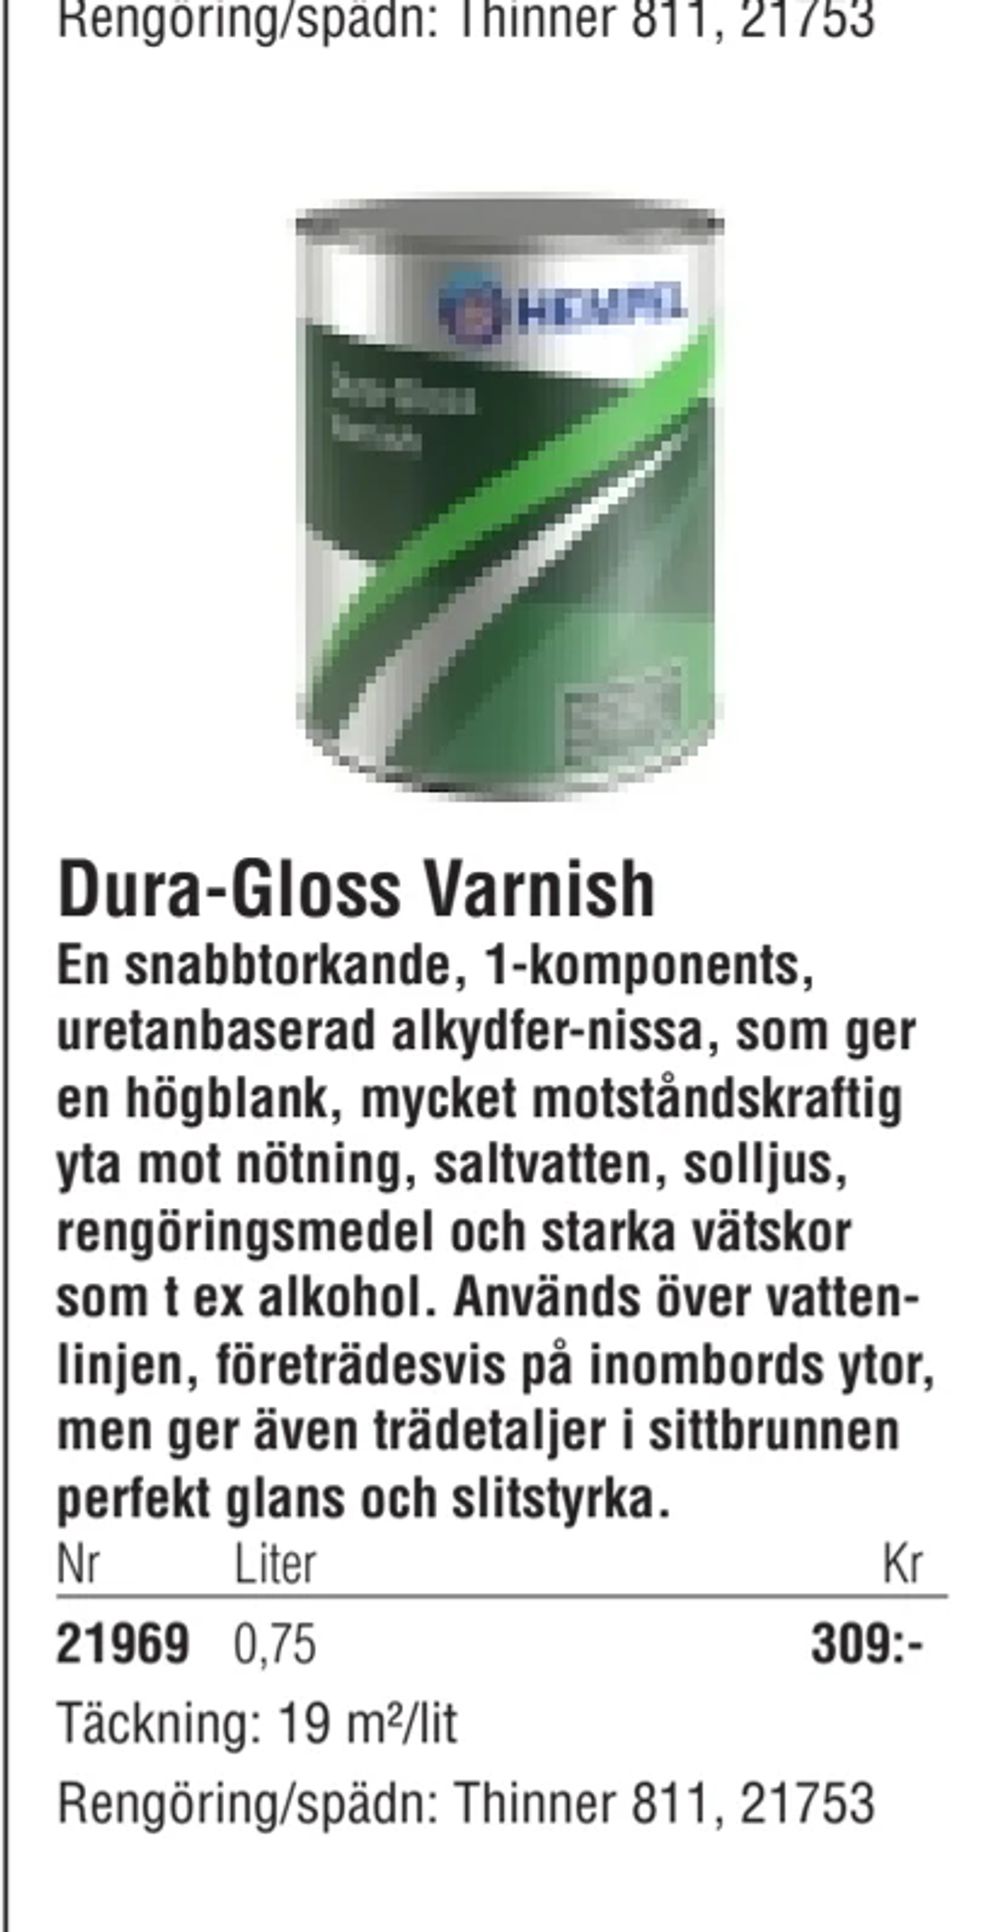 Erbjudanden på Dura-Gloss Varnish från Erlandsons Brygga för 309 kr